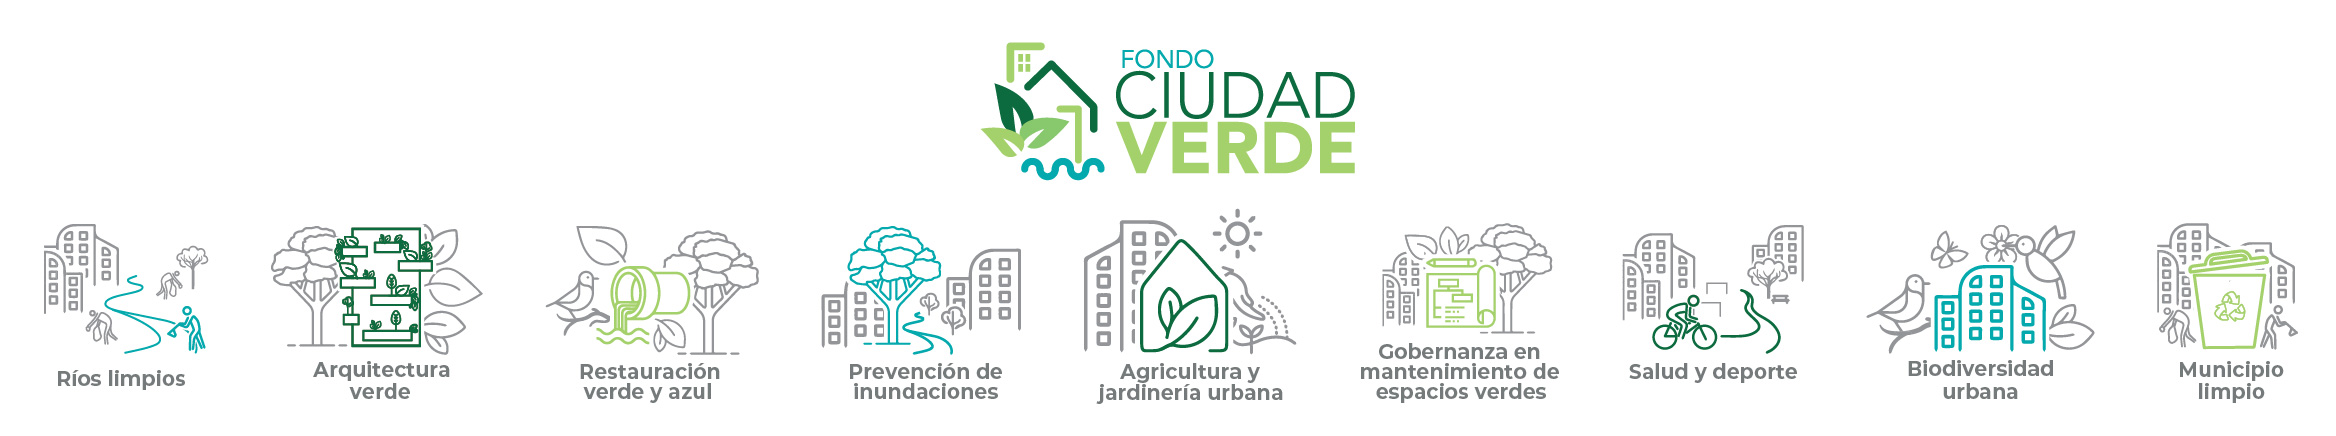 Infografía sobre áreas que financia el Proyecto Ciudad Verde con Fondos No Reembolsables